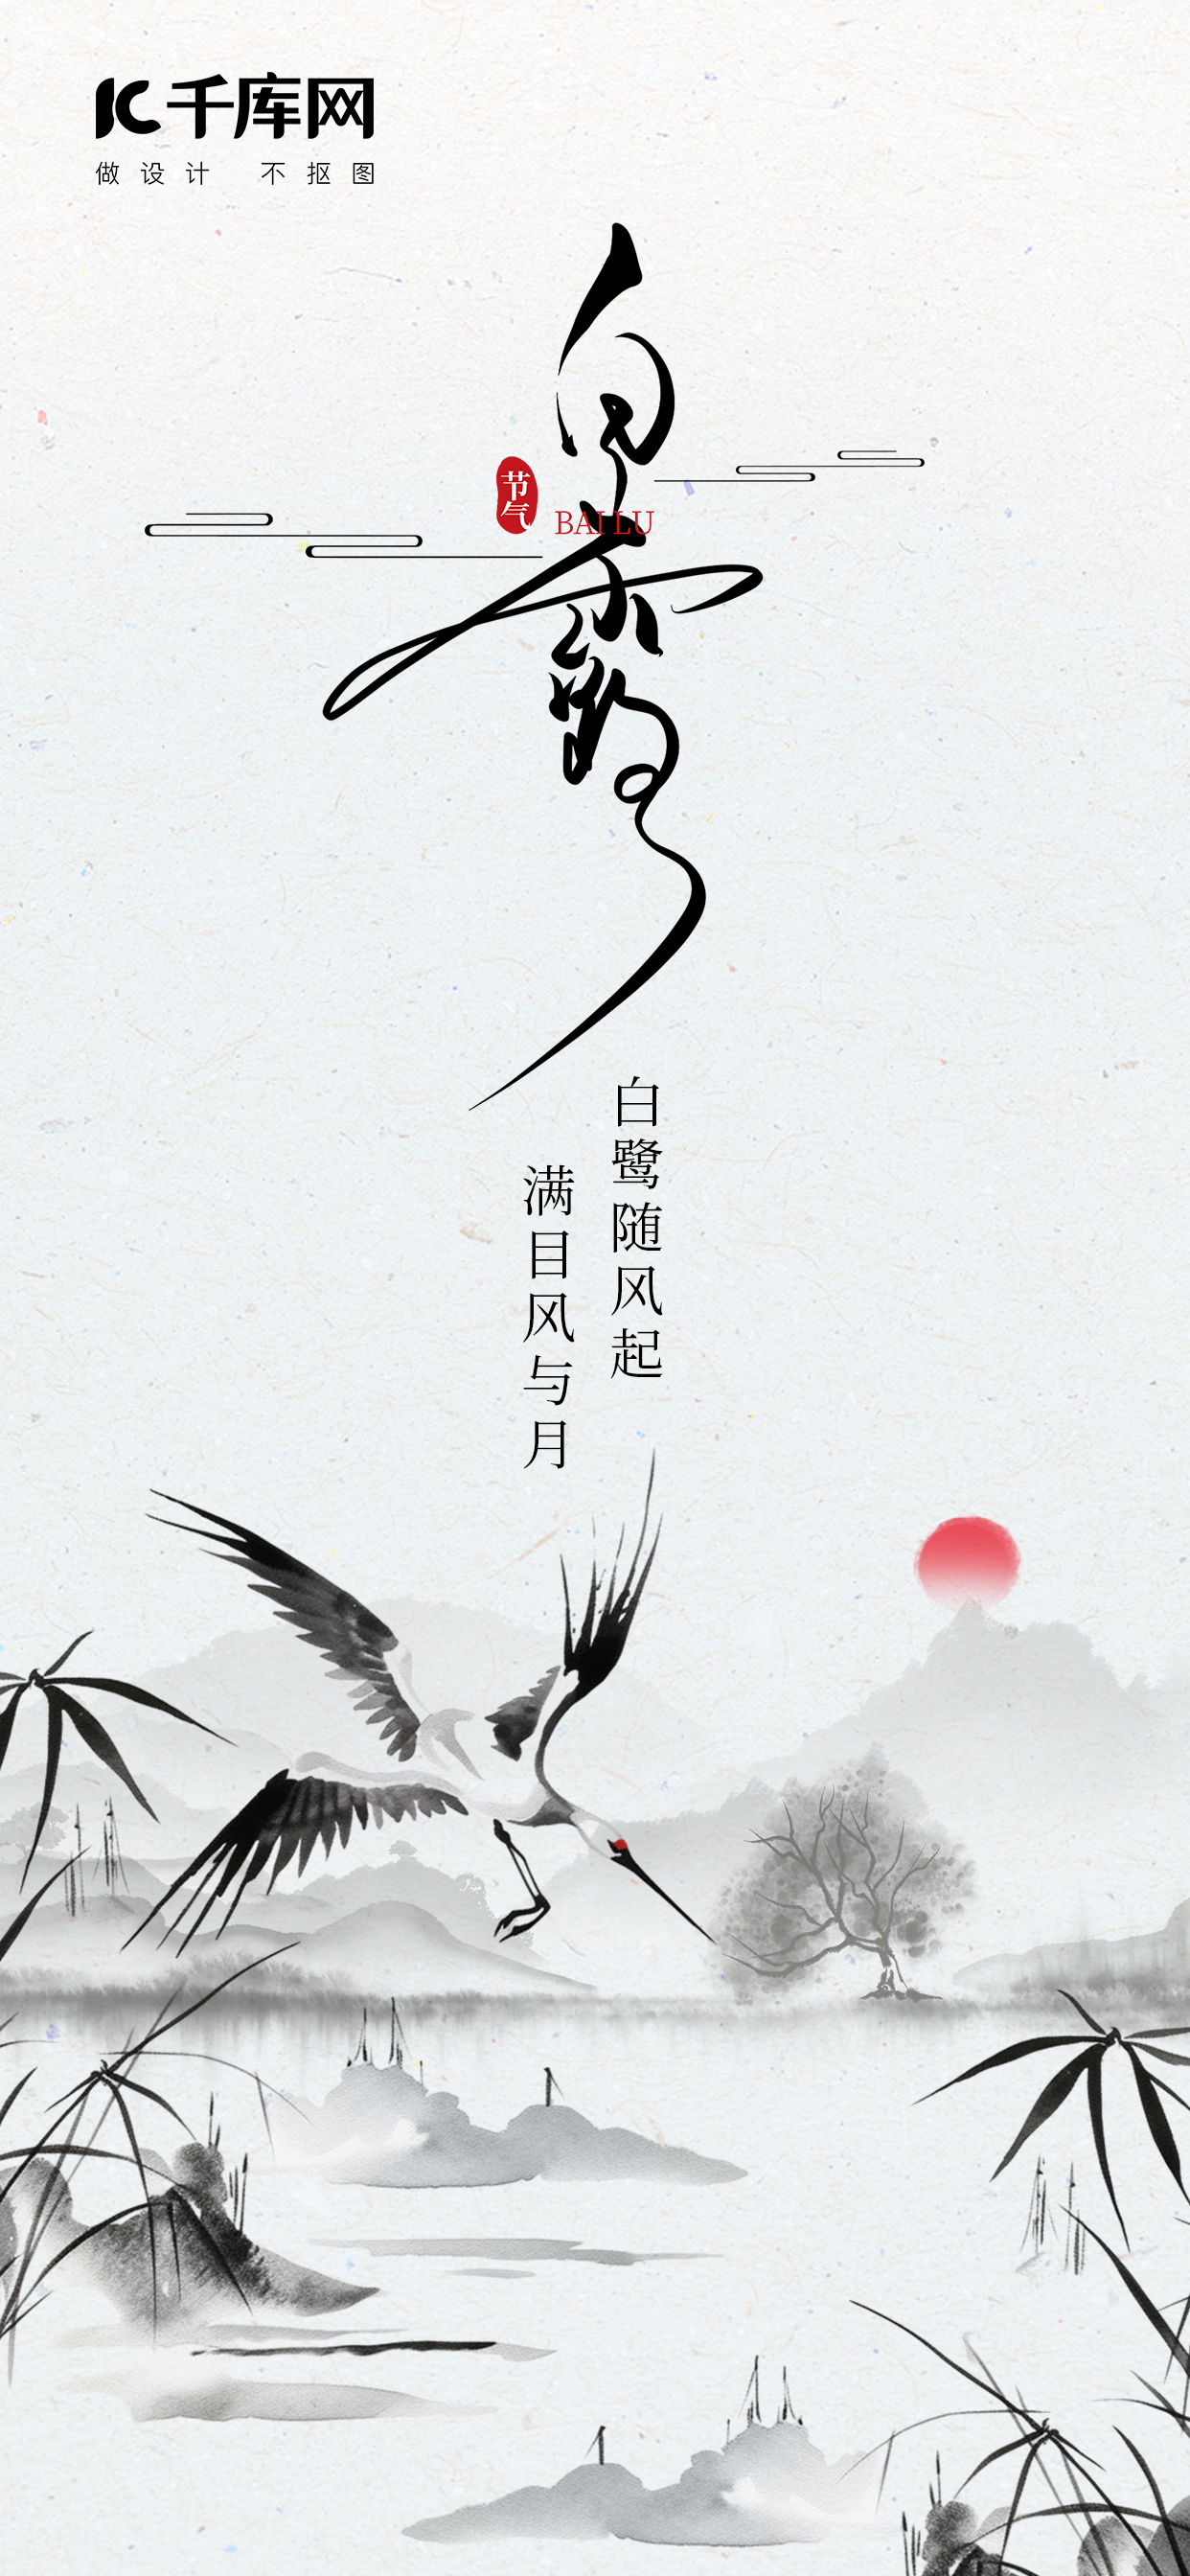 二十四节气,白露白鹭,芦苇黑色中国风,水墨海报图片